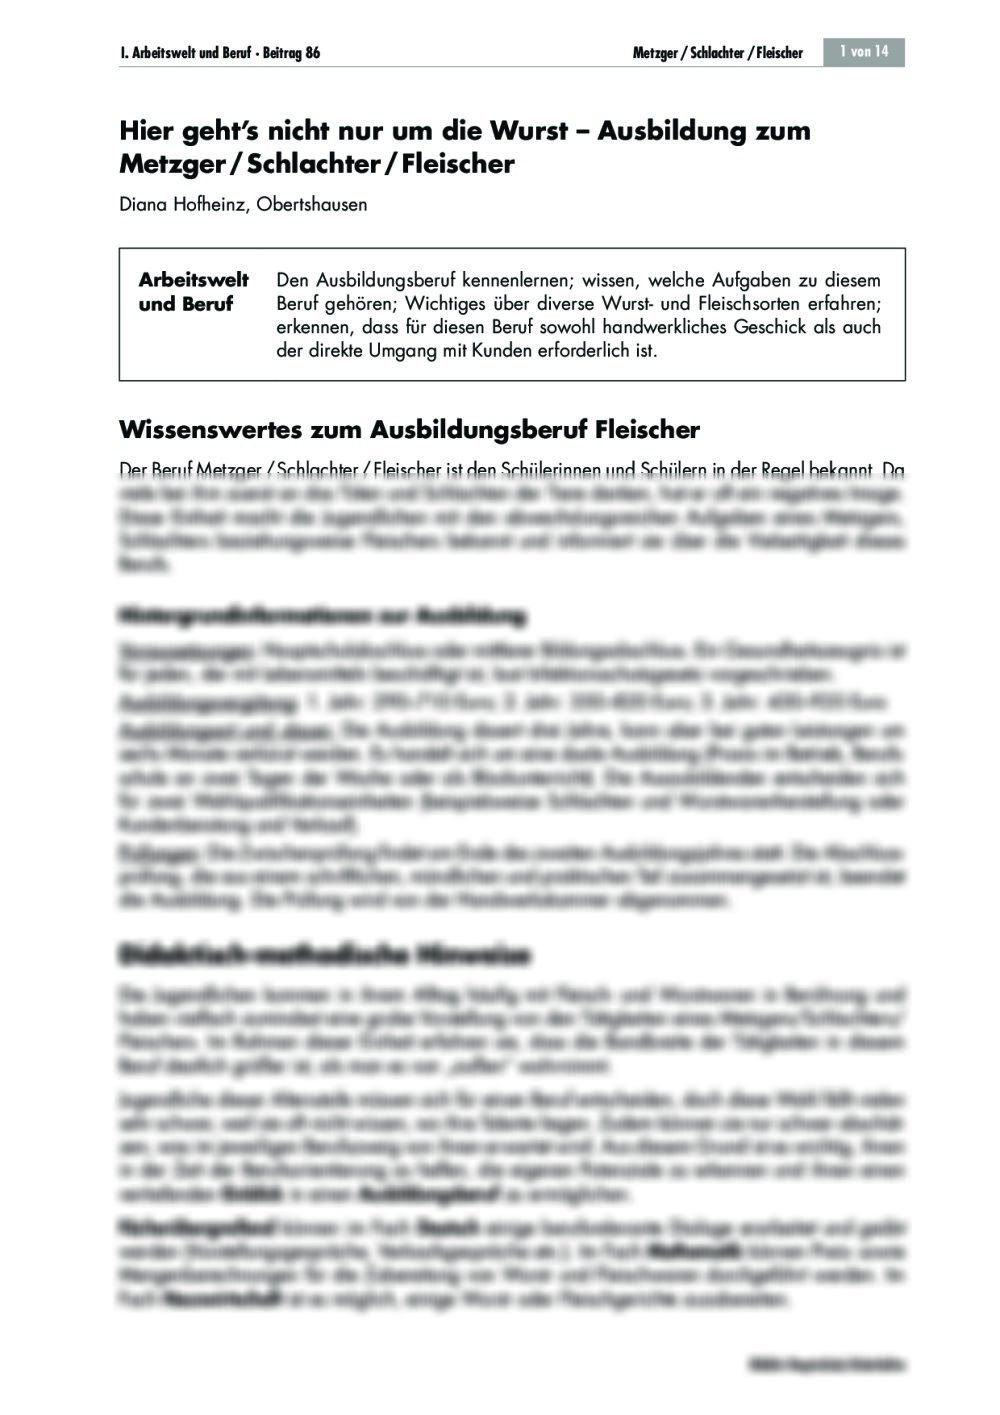 Metzger/Schlachter/Fleischer - Seite 1